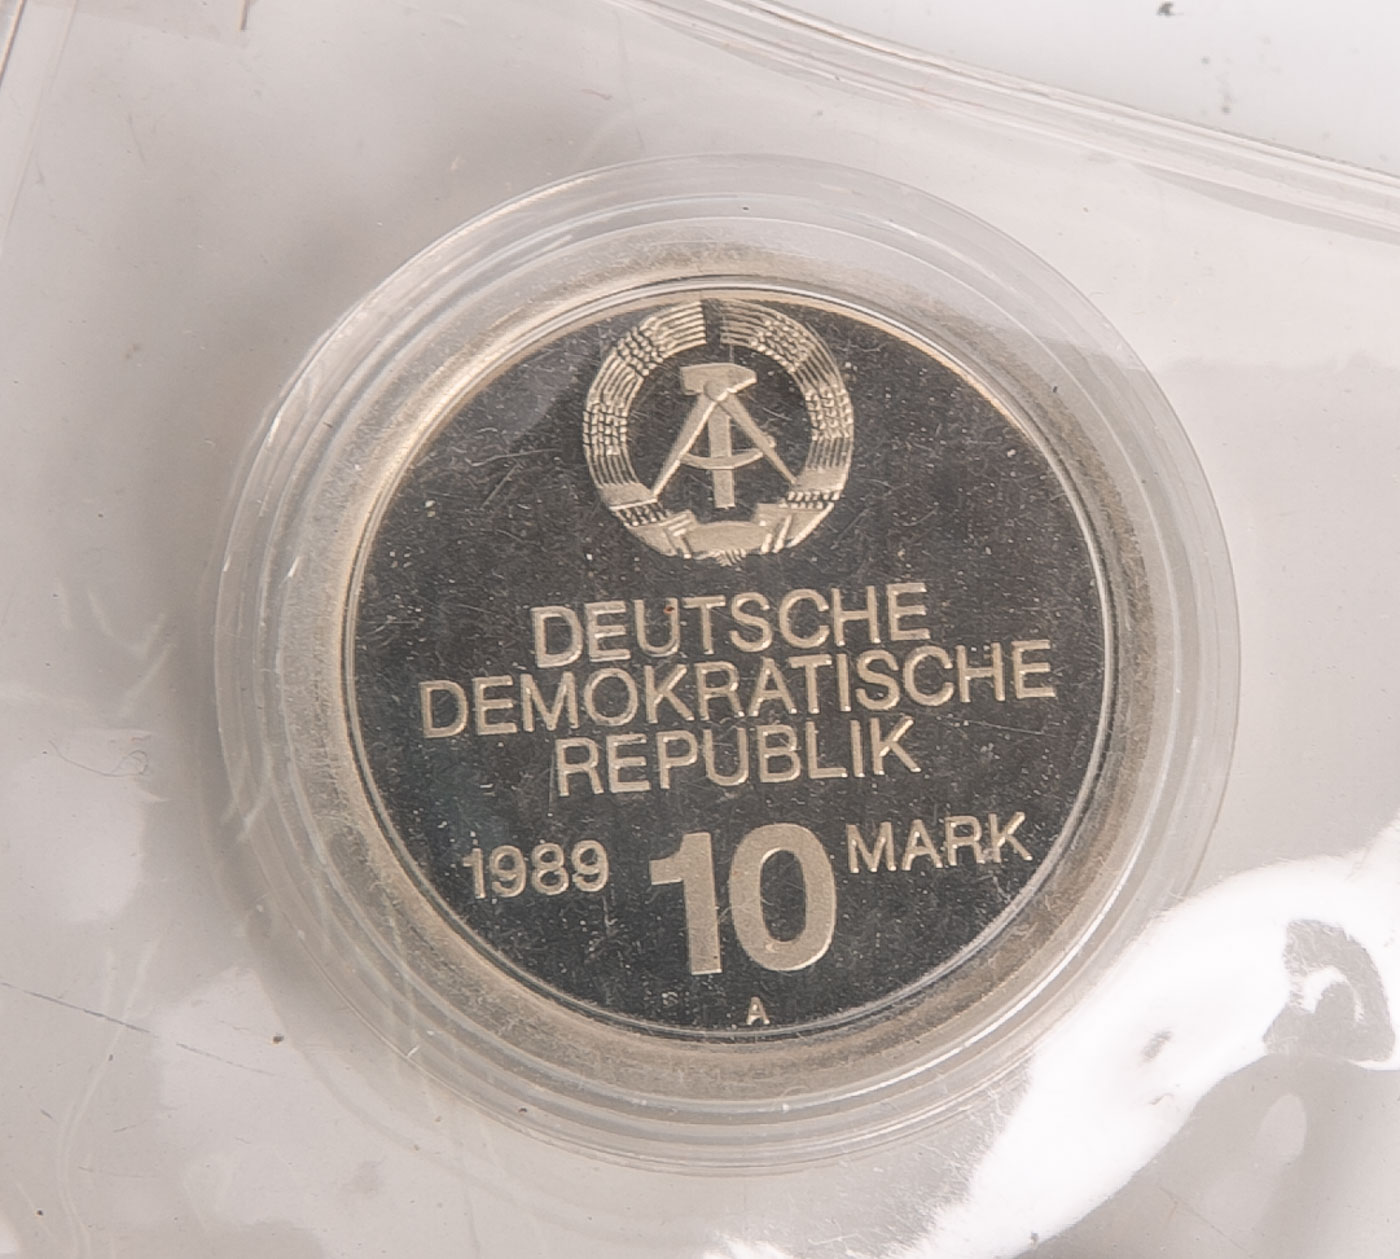 10 DM-Münze "40 Jahre Wirtschaftshilfe / RGW-Gebäude Moskau" (DDR, 1989), Münzprägestätte:A, in